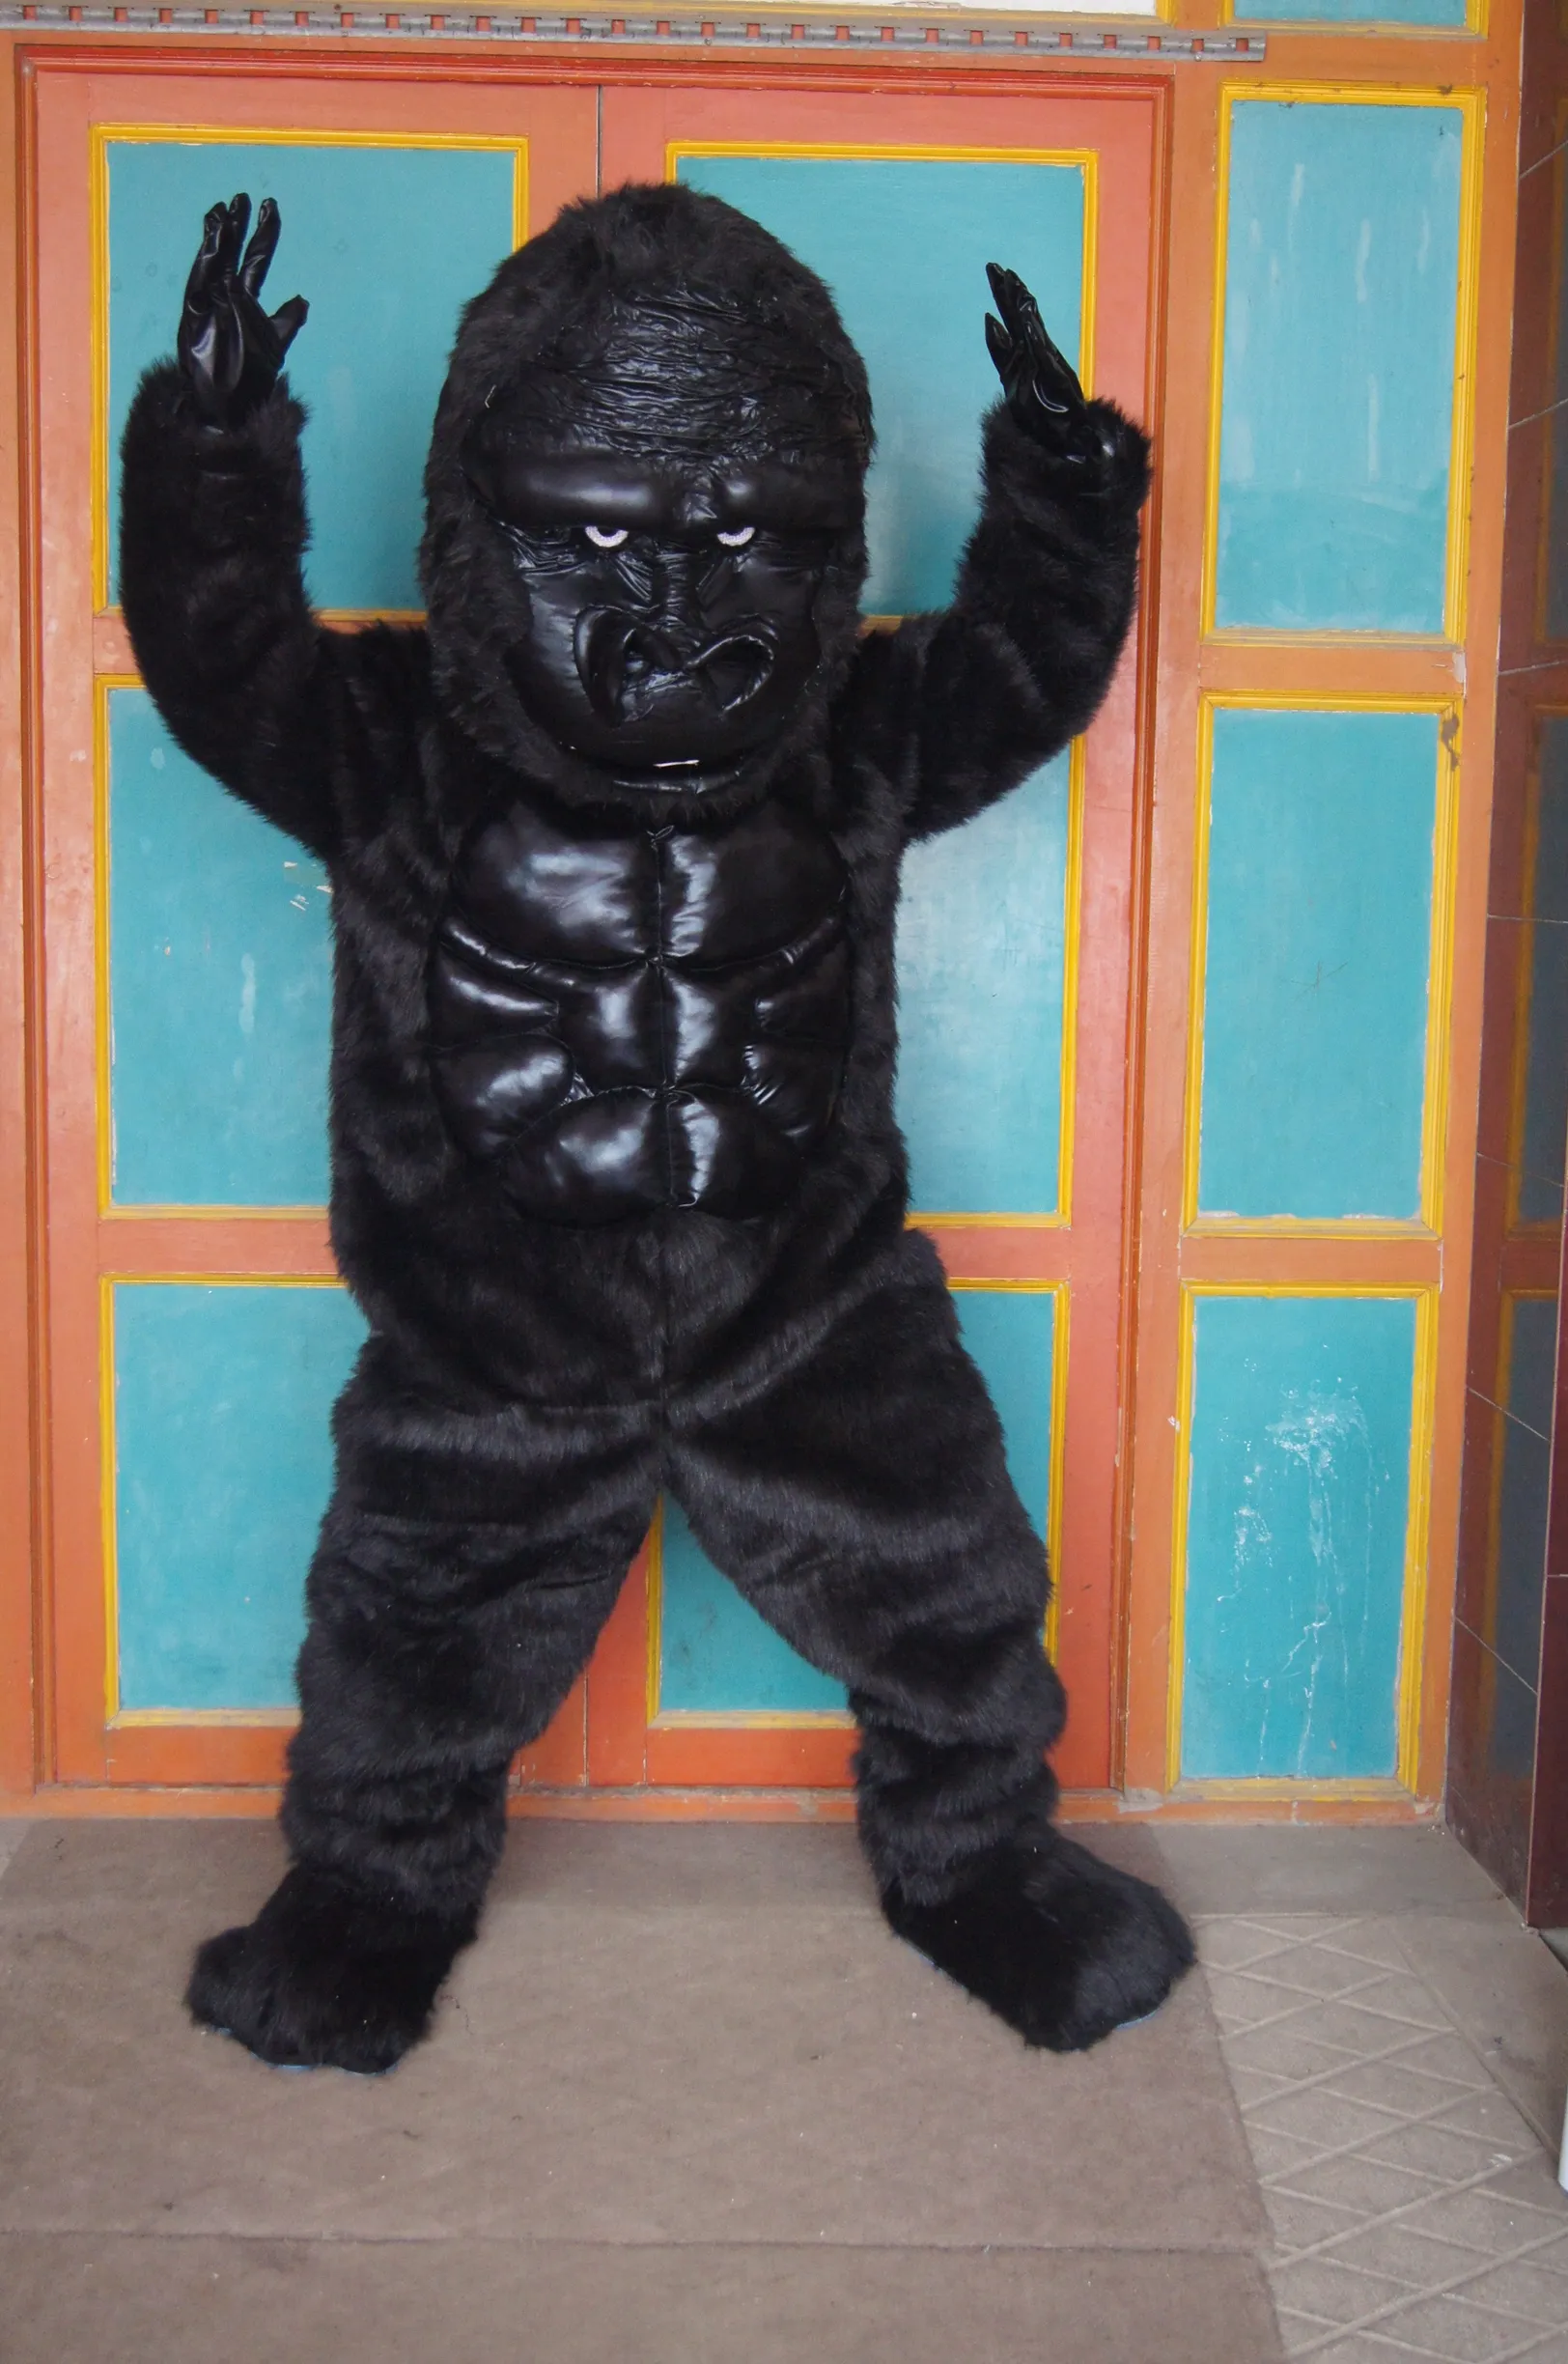 حار بيع الكرتون الفيلم شخصية حقيقية القرد الغوريلا الشمبانزي jocko الشمبانزي التميمة حلي الكبار الحجم شحن مجاني